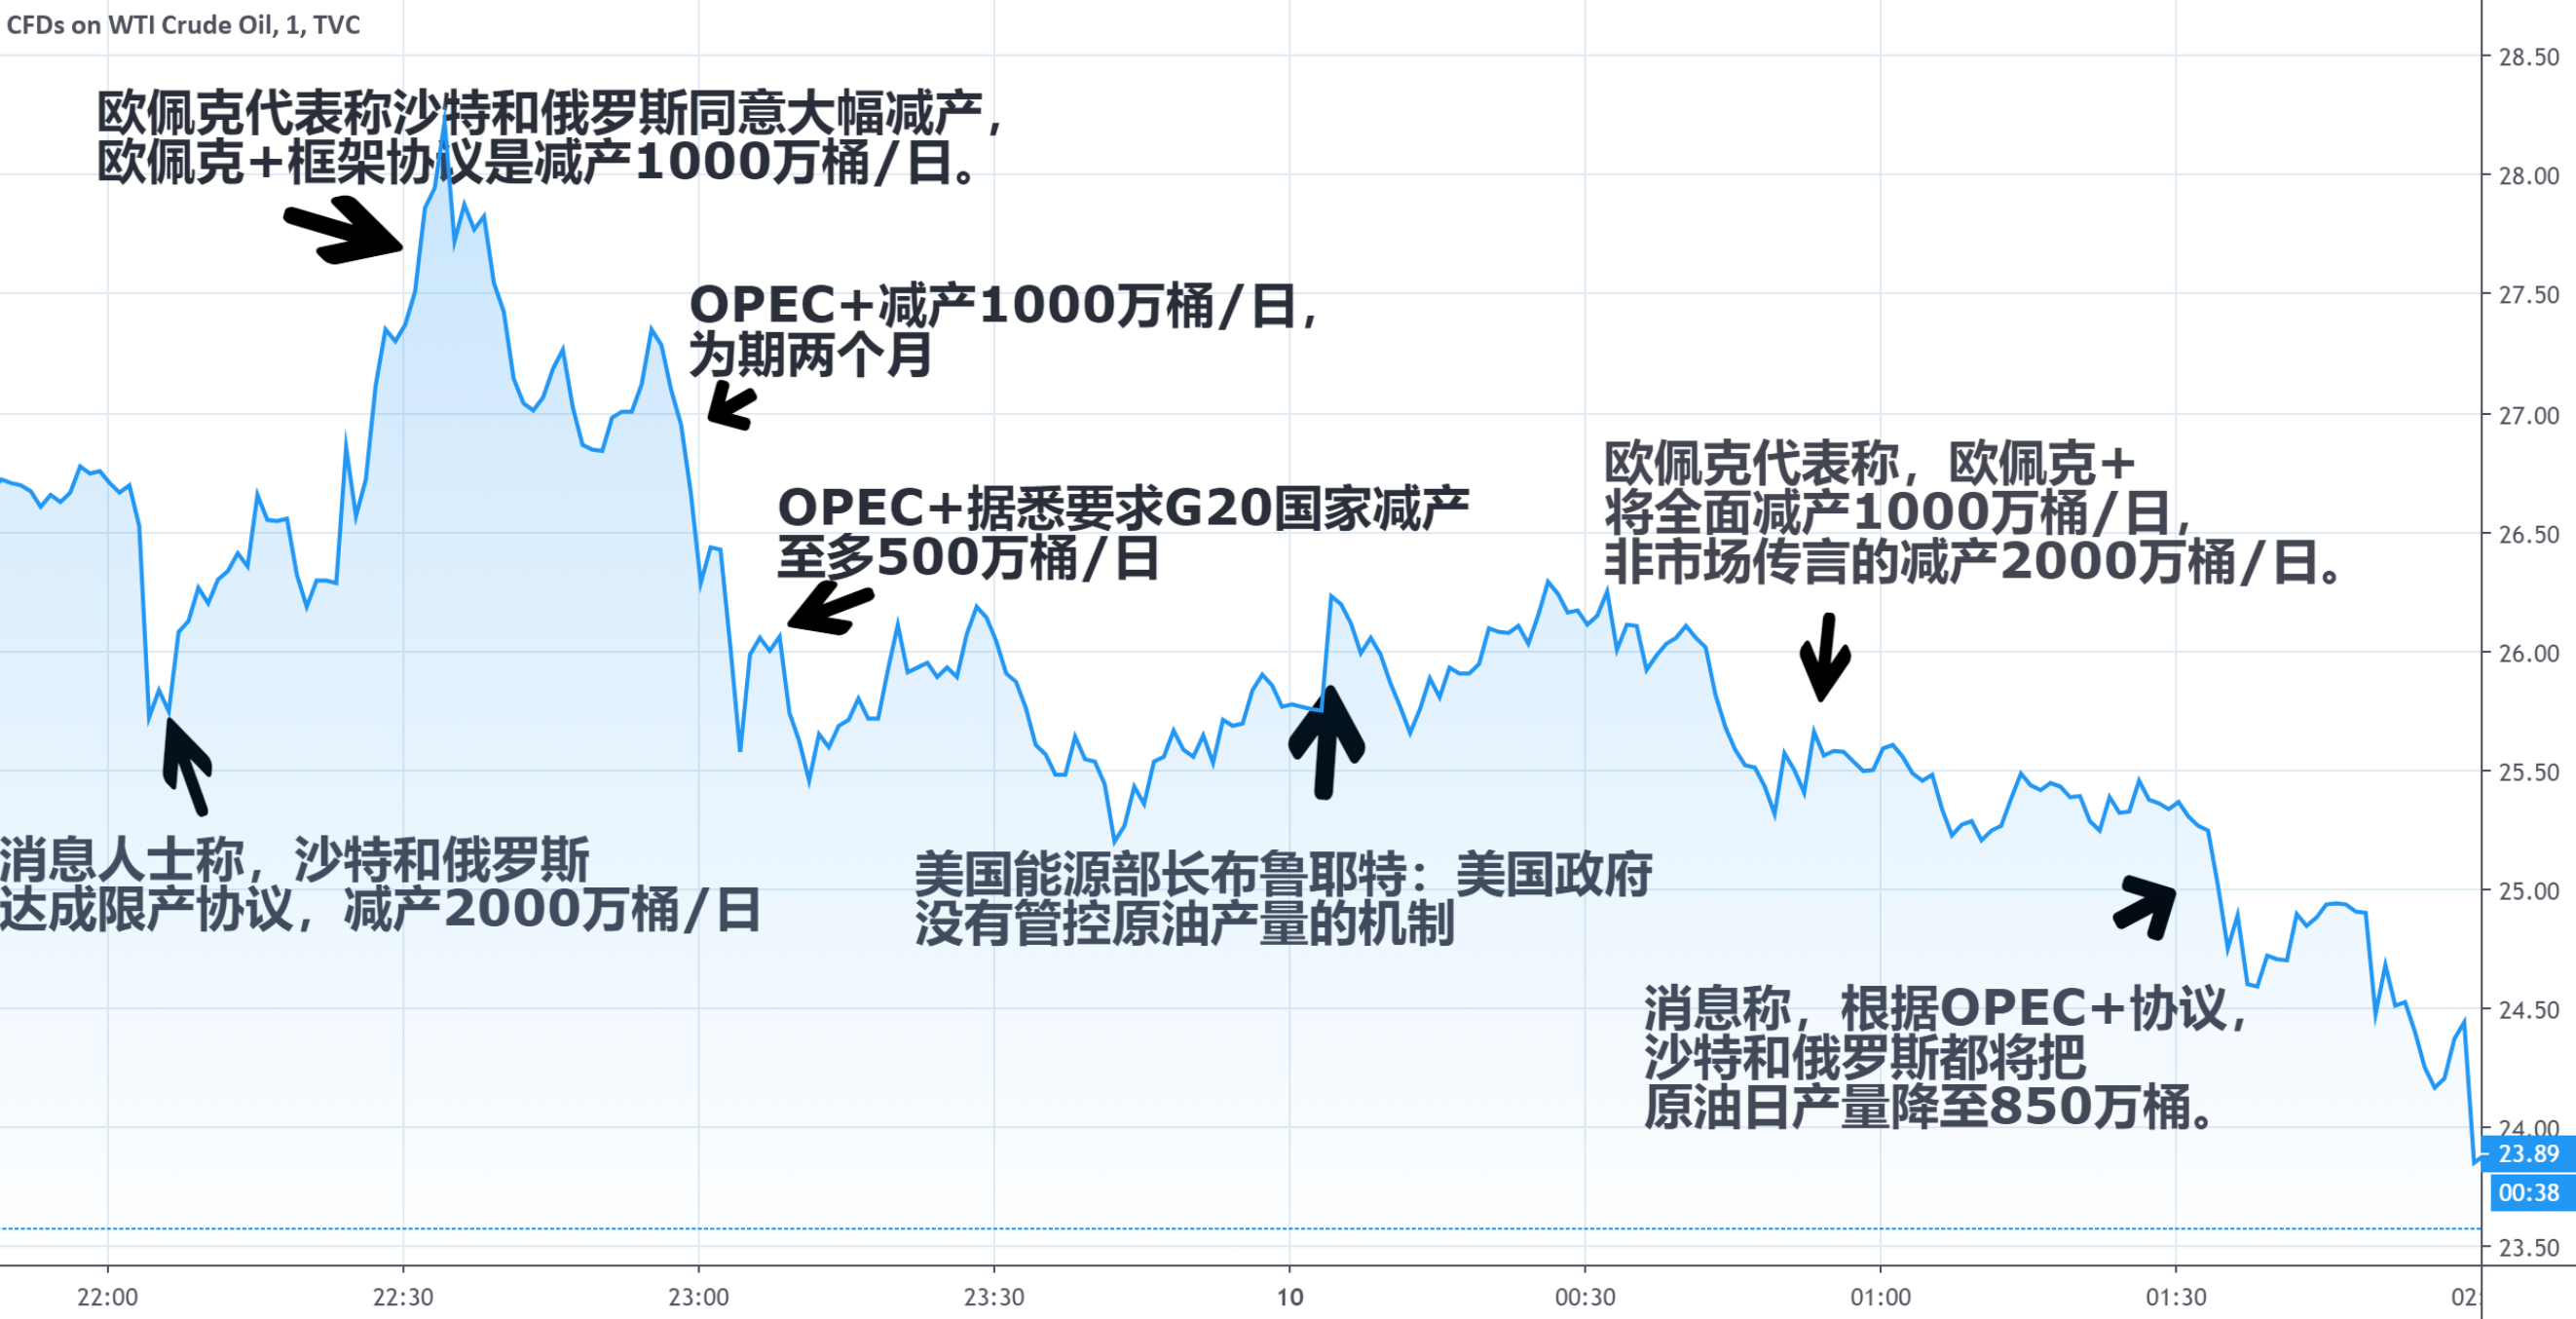 OPEC+会议意外不断 原油市场一夜之间经历暴涨暴跌